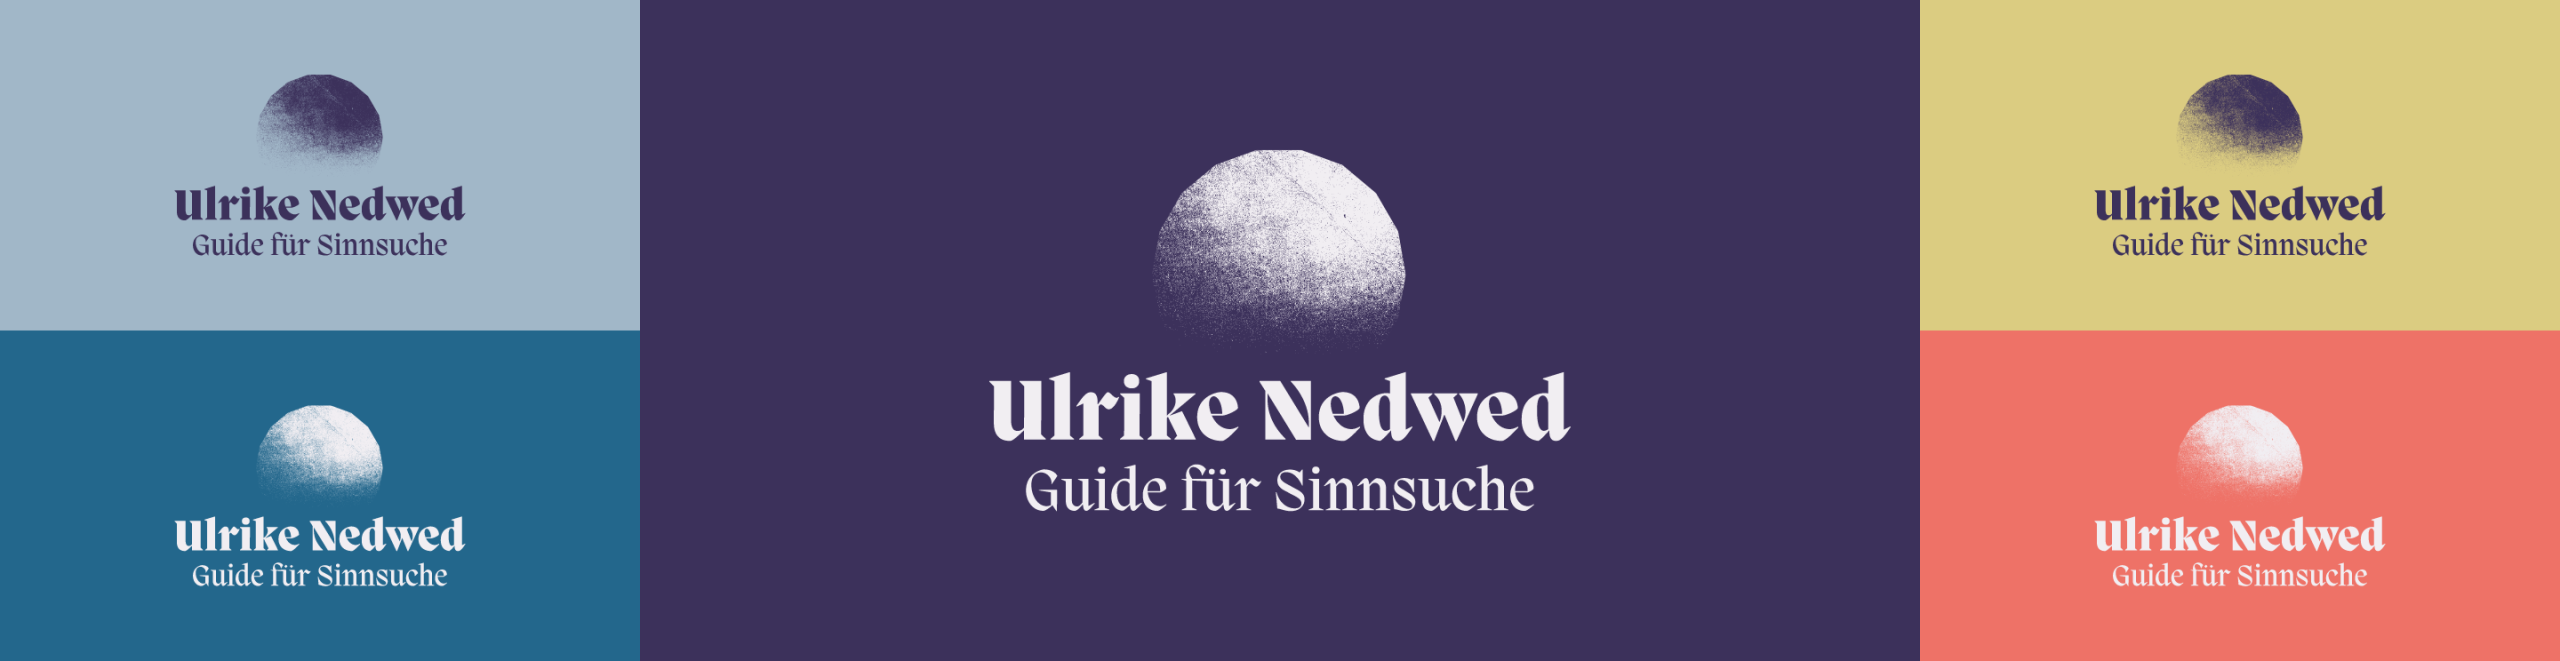 Ulrike_Nedwed-Logo-Varianten